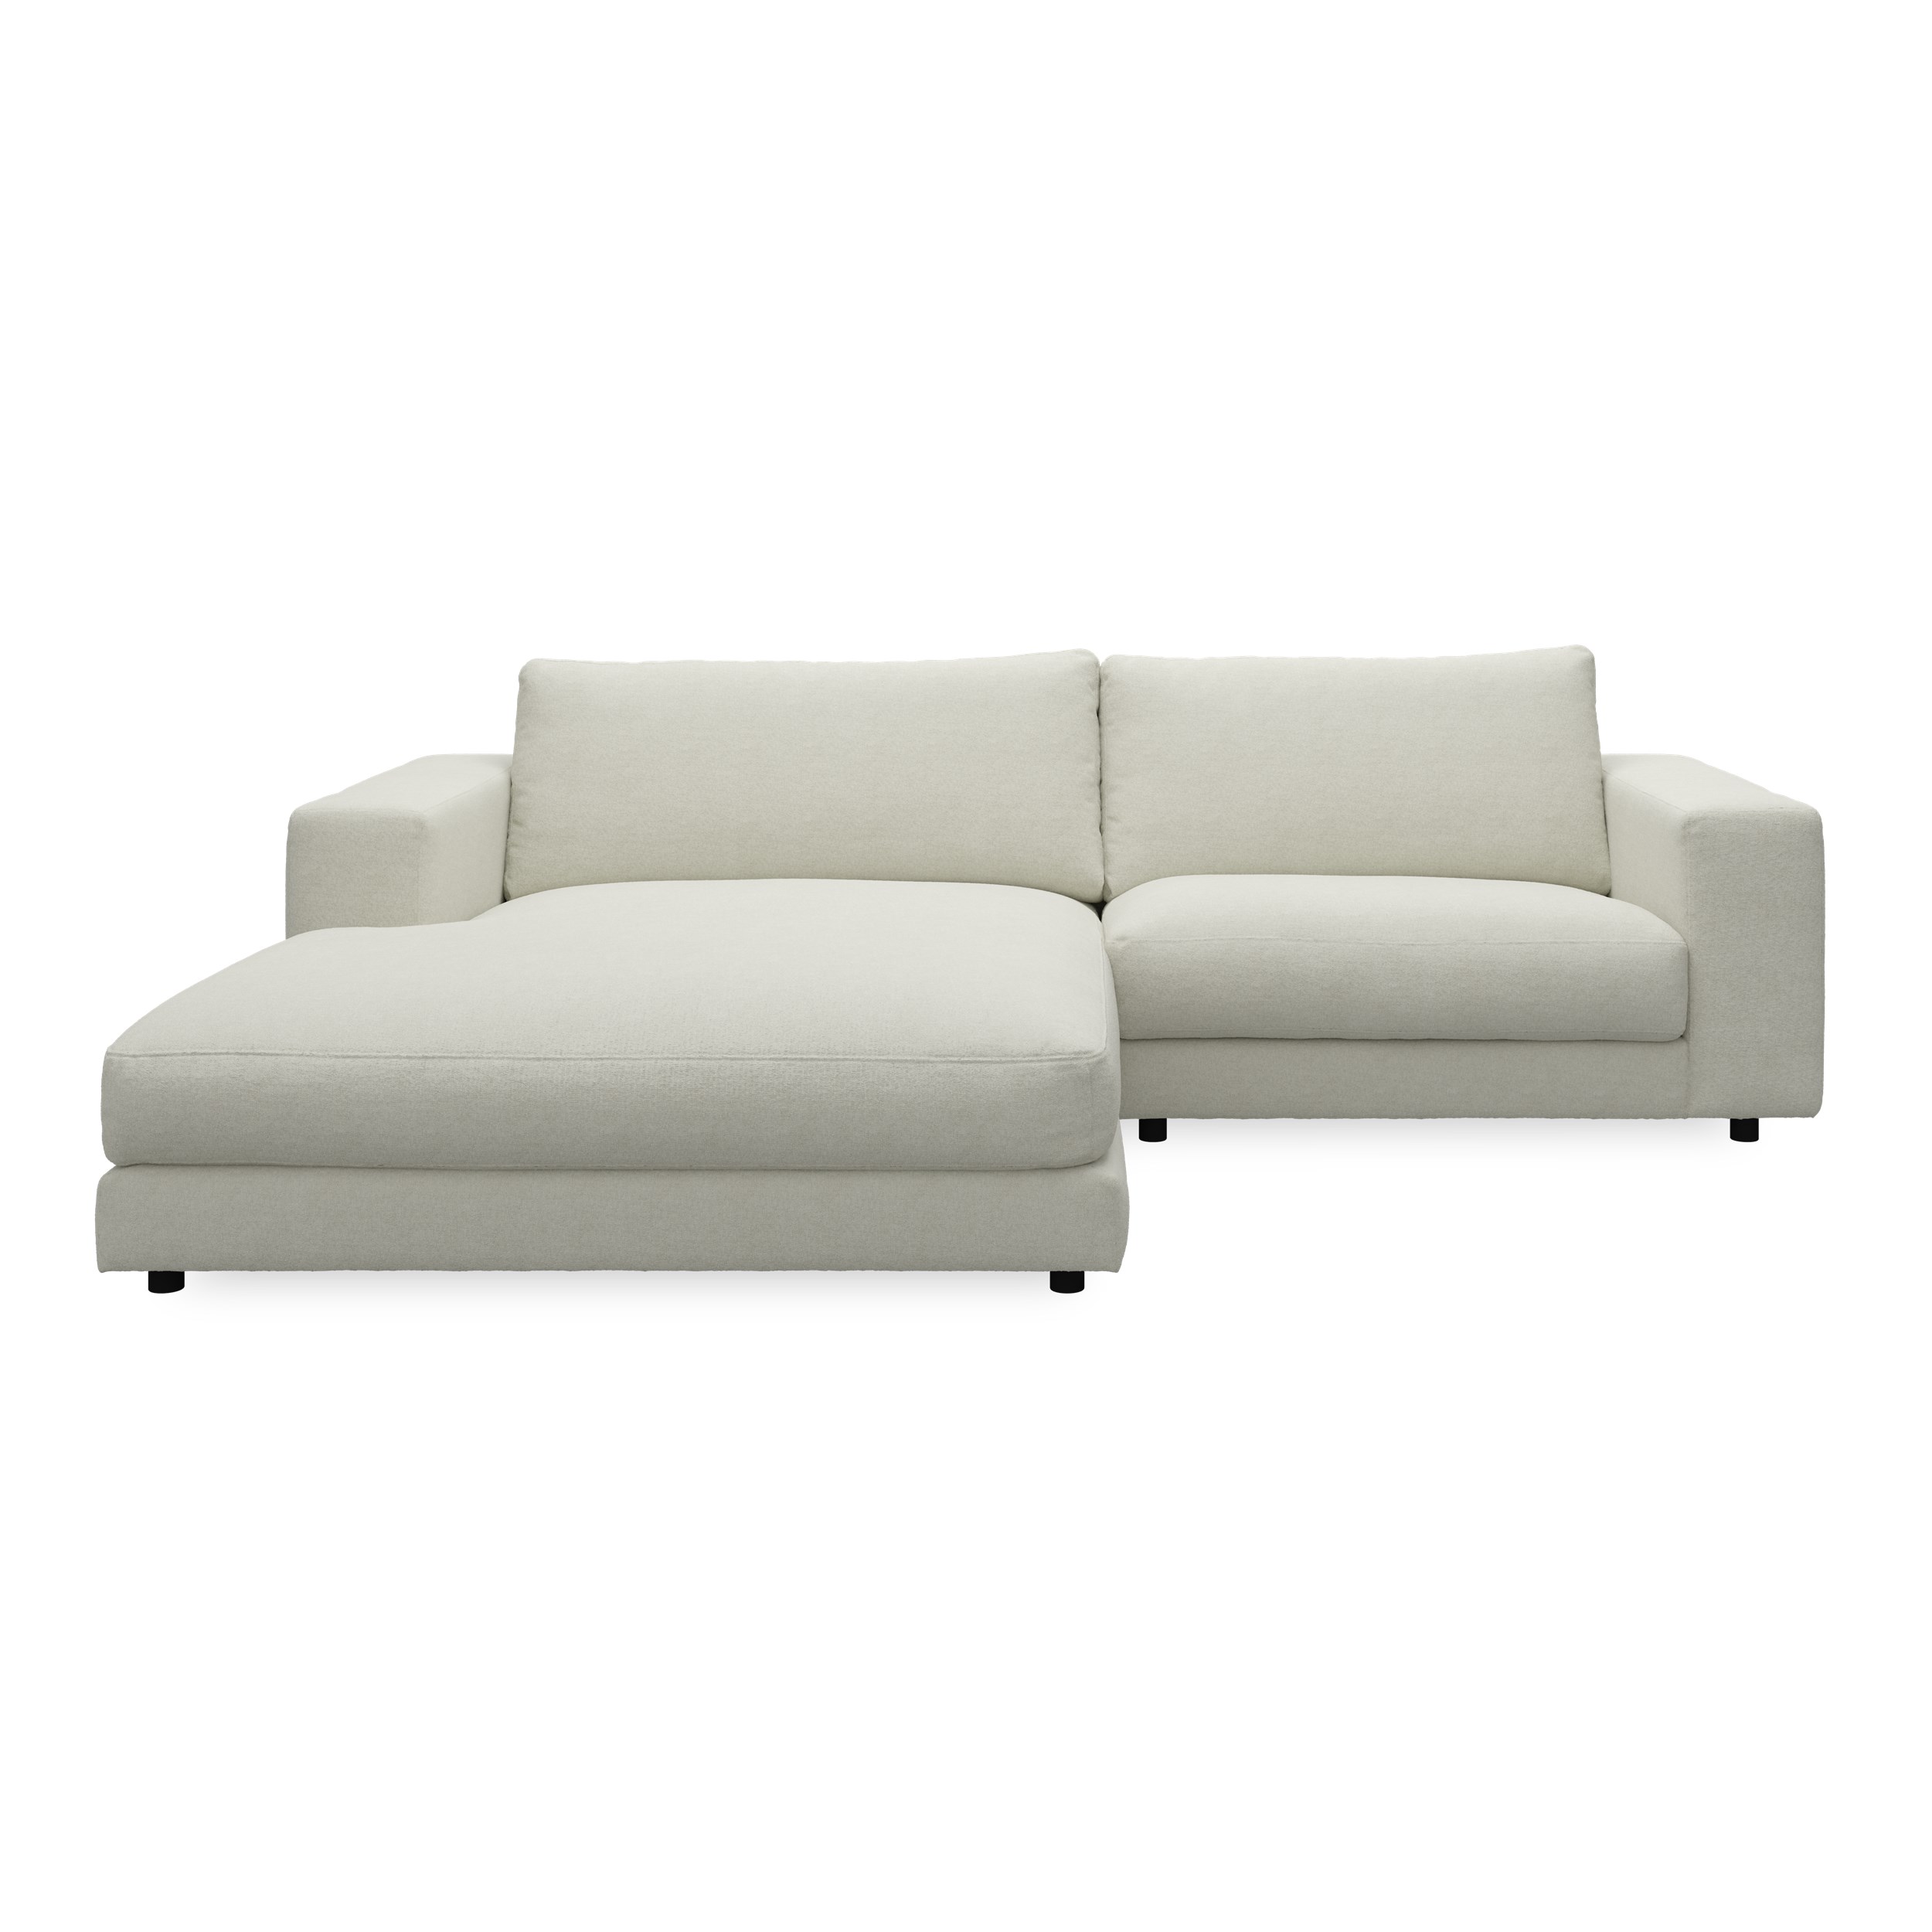 Bennent vänstervänd soffa med schäslong - Yelda Natur klädsel, ben i svart plast och S:skum/fib/din/sili R:Dun/skum